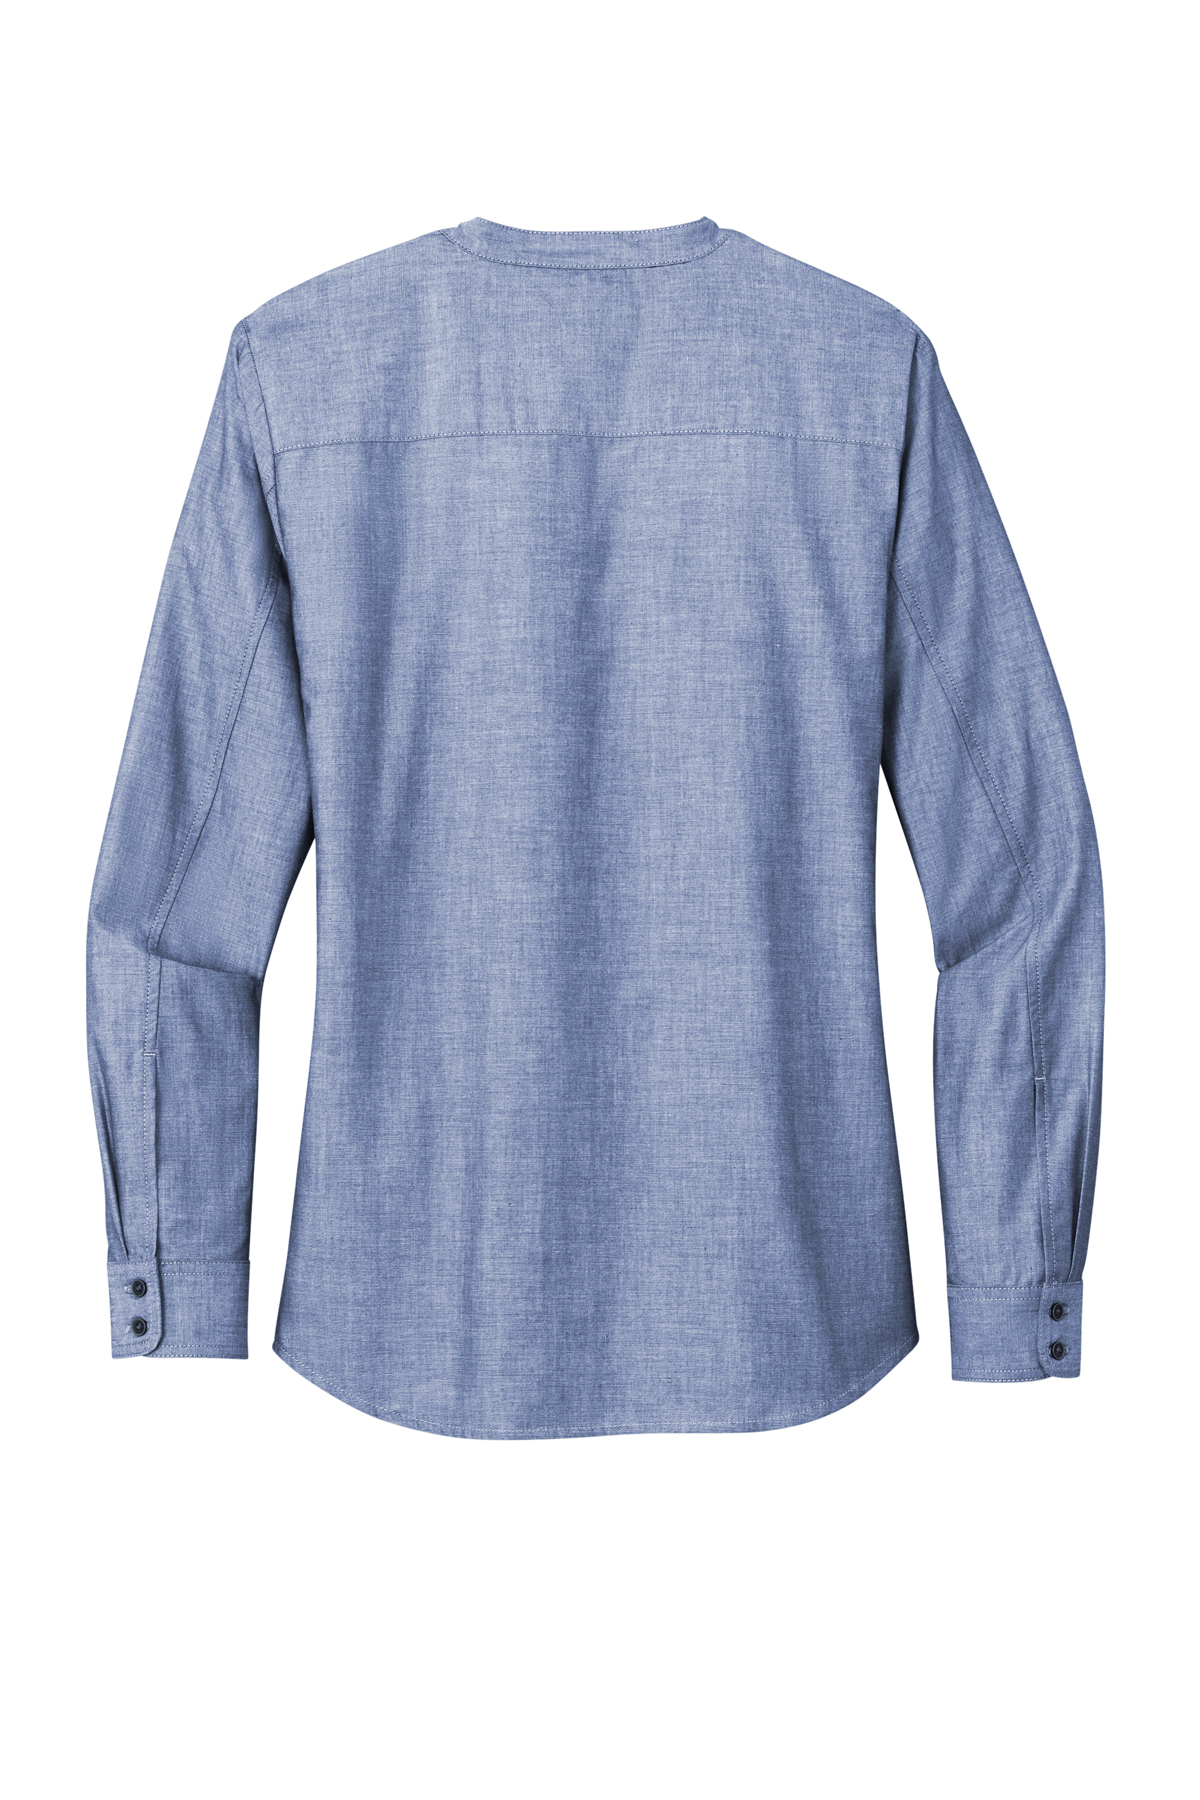 Minimalist Stretch Cotton Chambray Shirt - Heritage Blue